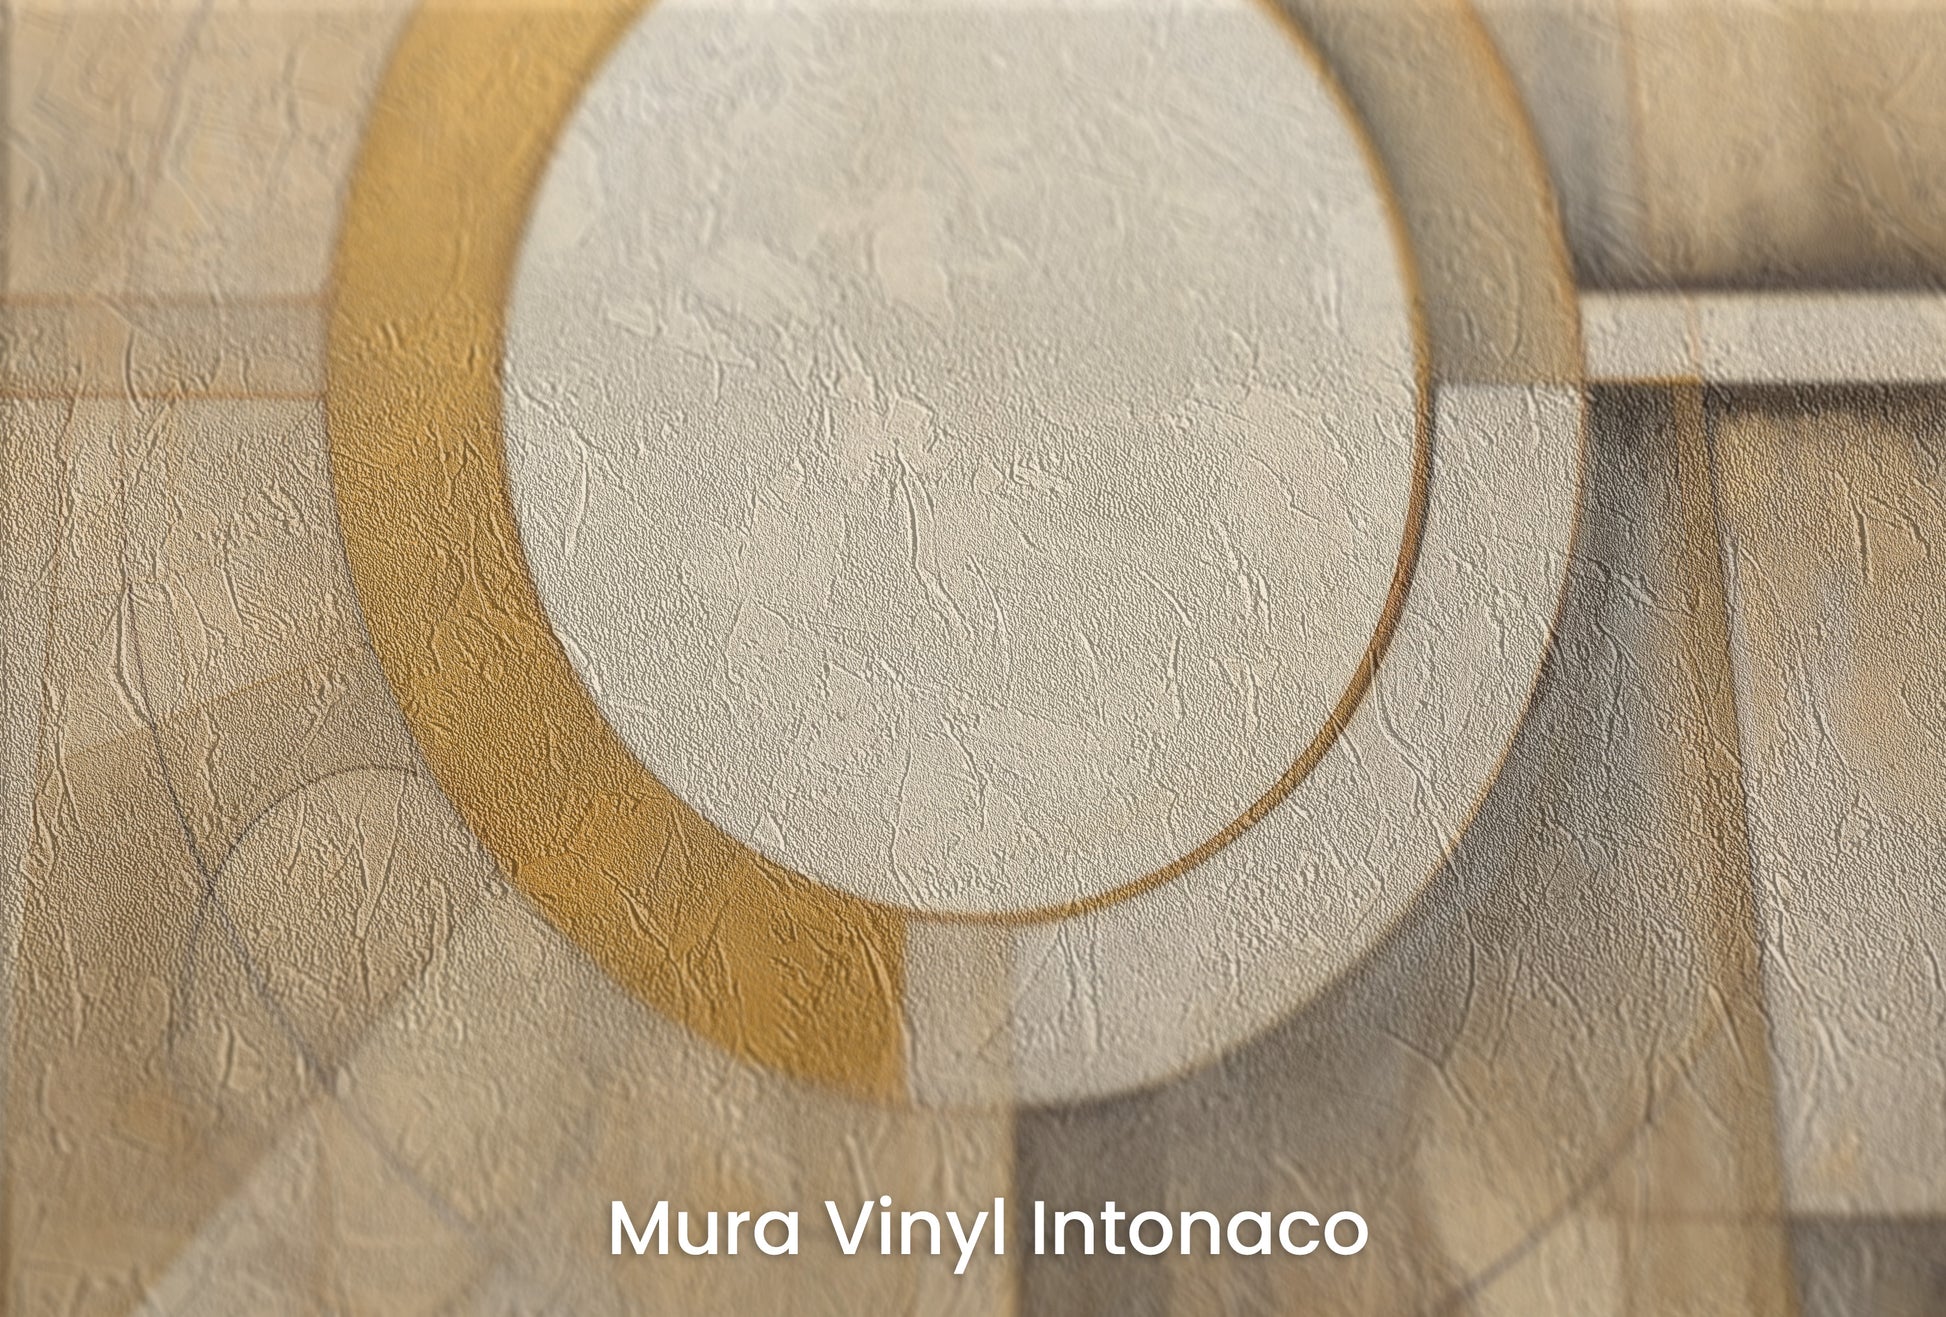 Zbliżenie na artystyczną fototapetę o nazwie CIRCULAR SYMMETRY IN GOLD AND CREAM na podłożu Mura Vinyl Intonaco - struktura tartego tynku.